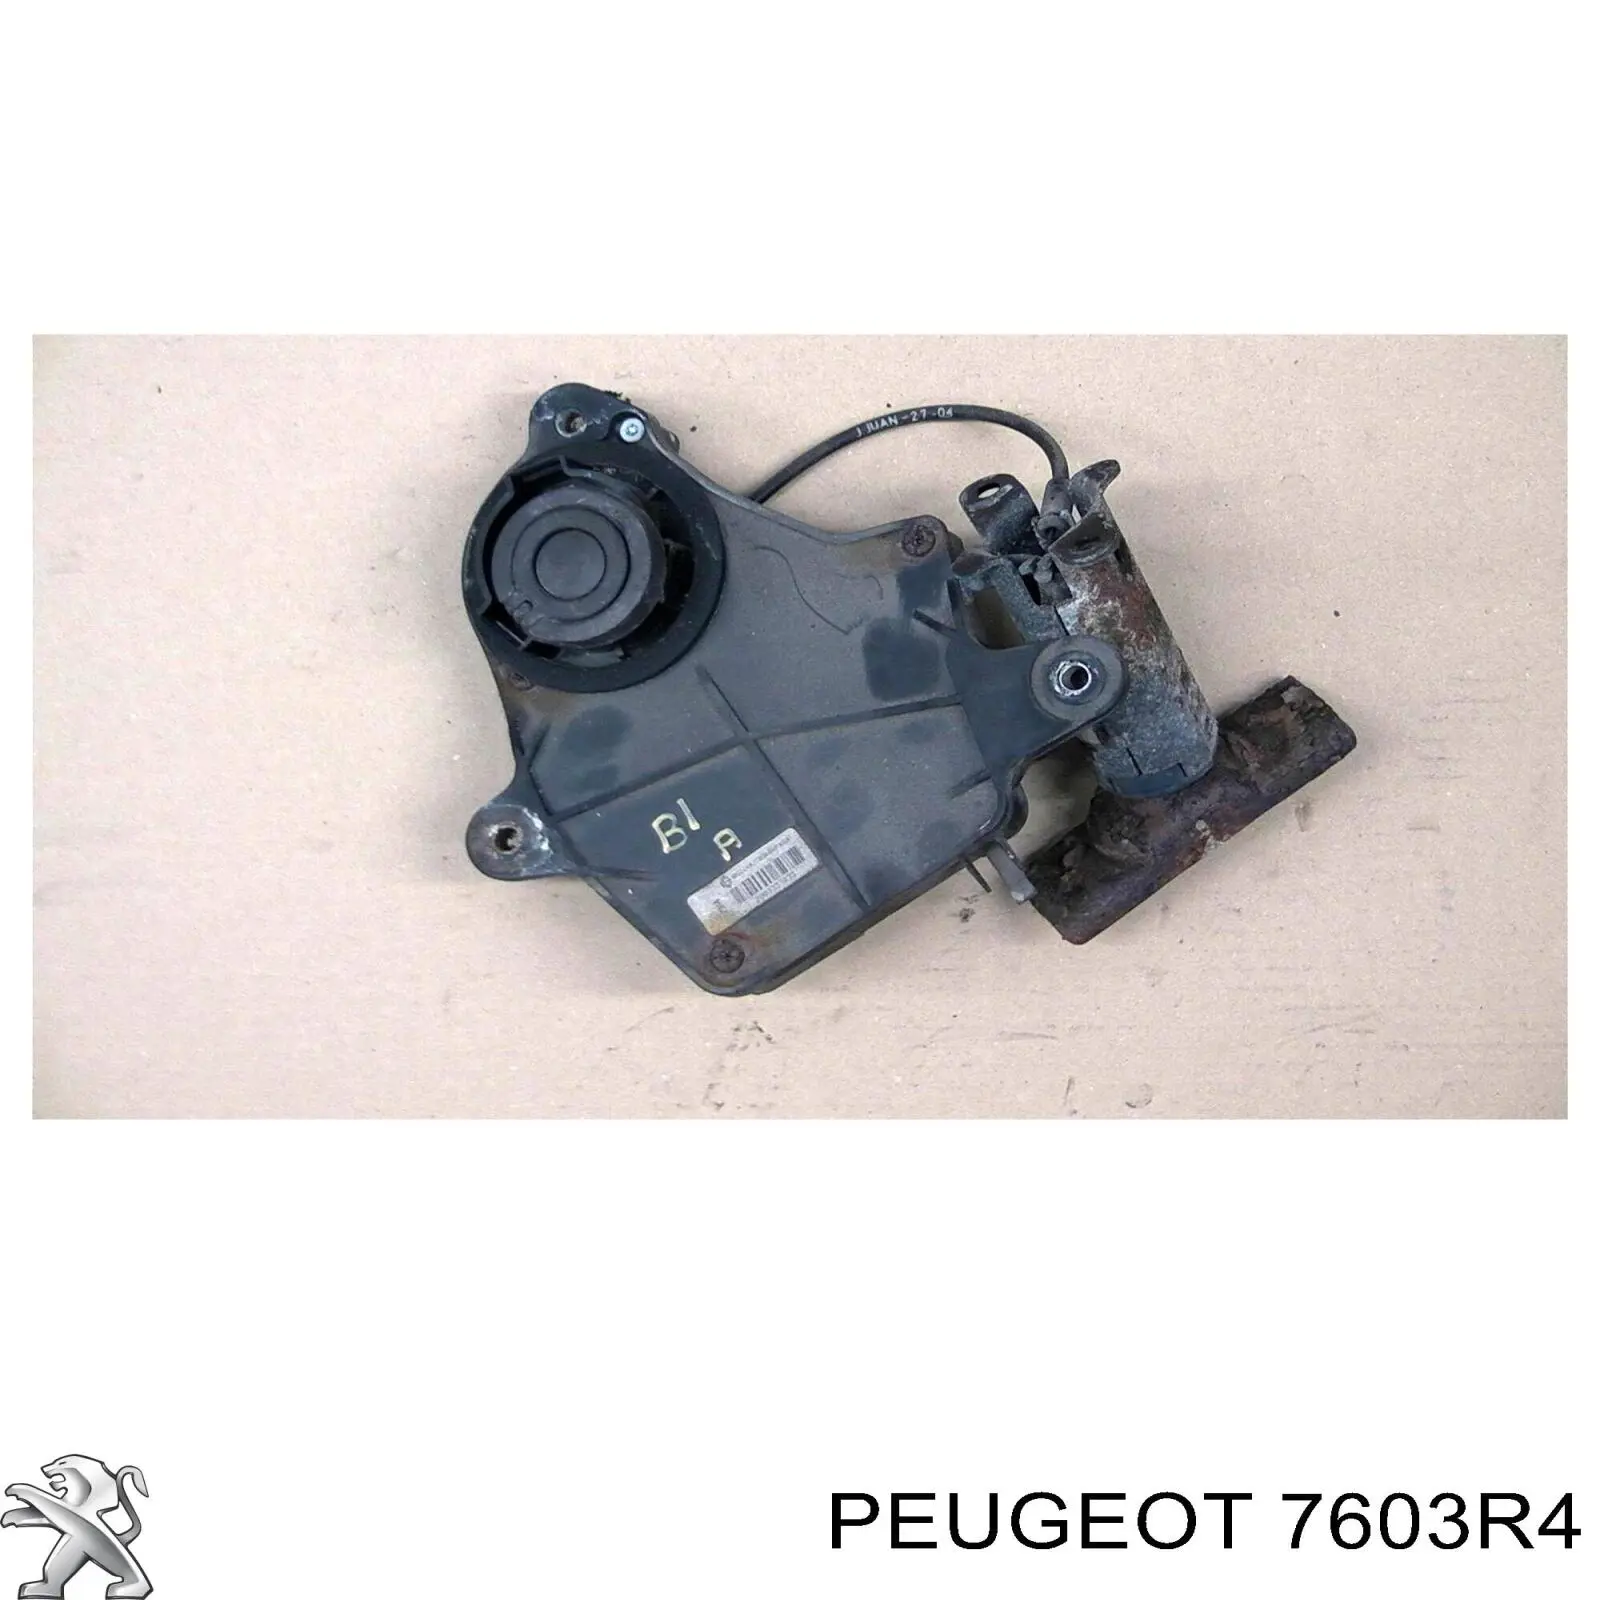 Cabrestante de rueda de repuesto Peugeot/Citroen 7603R4